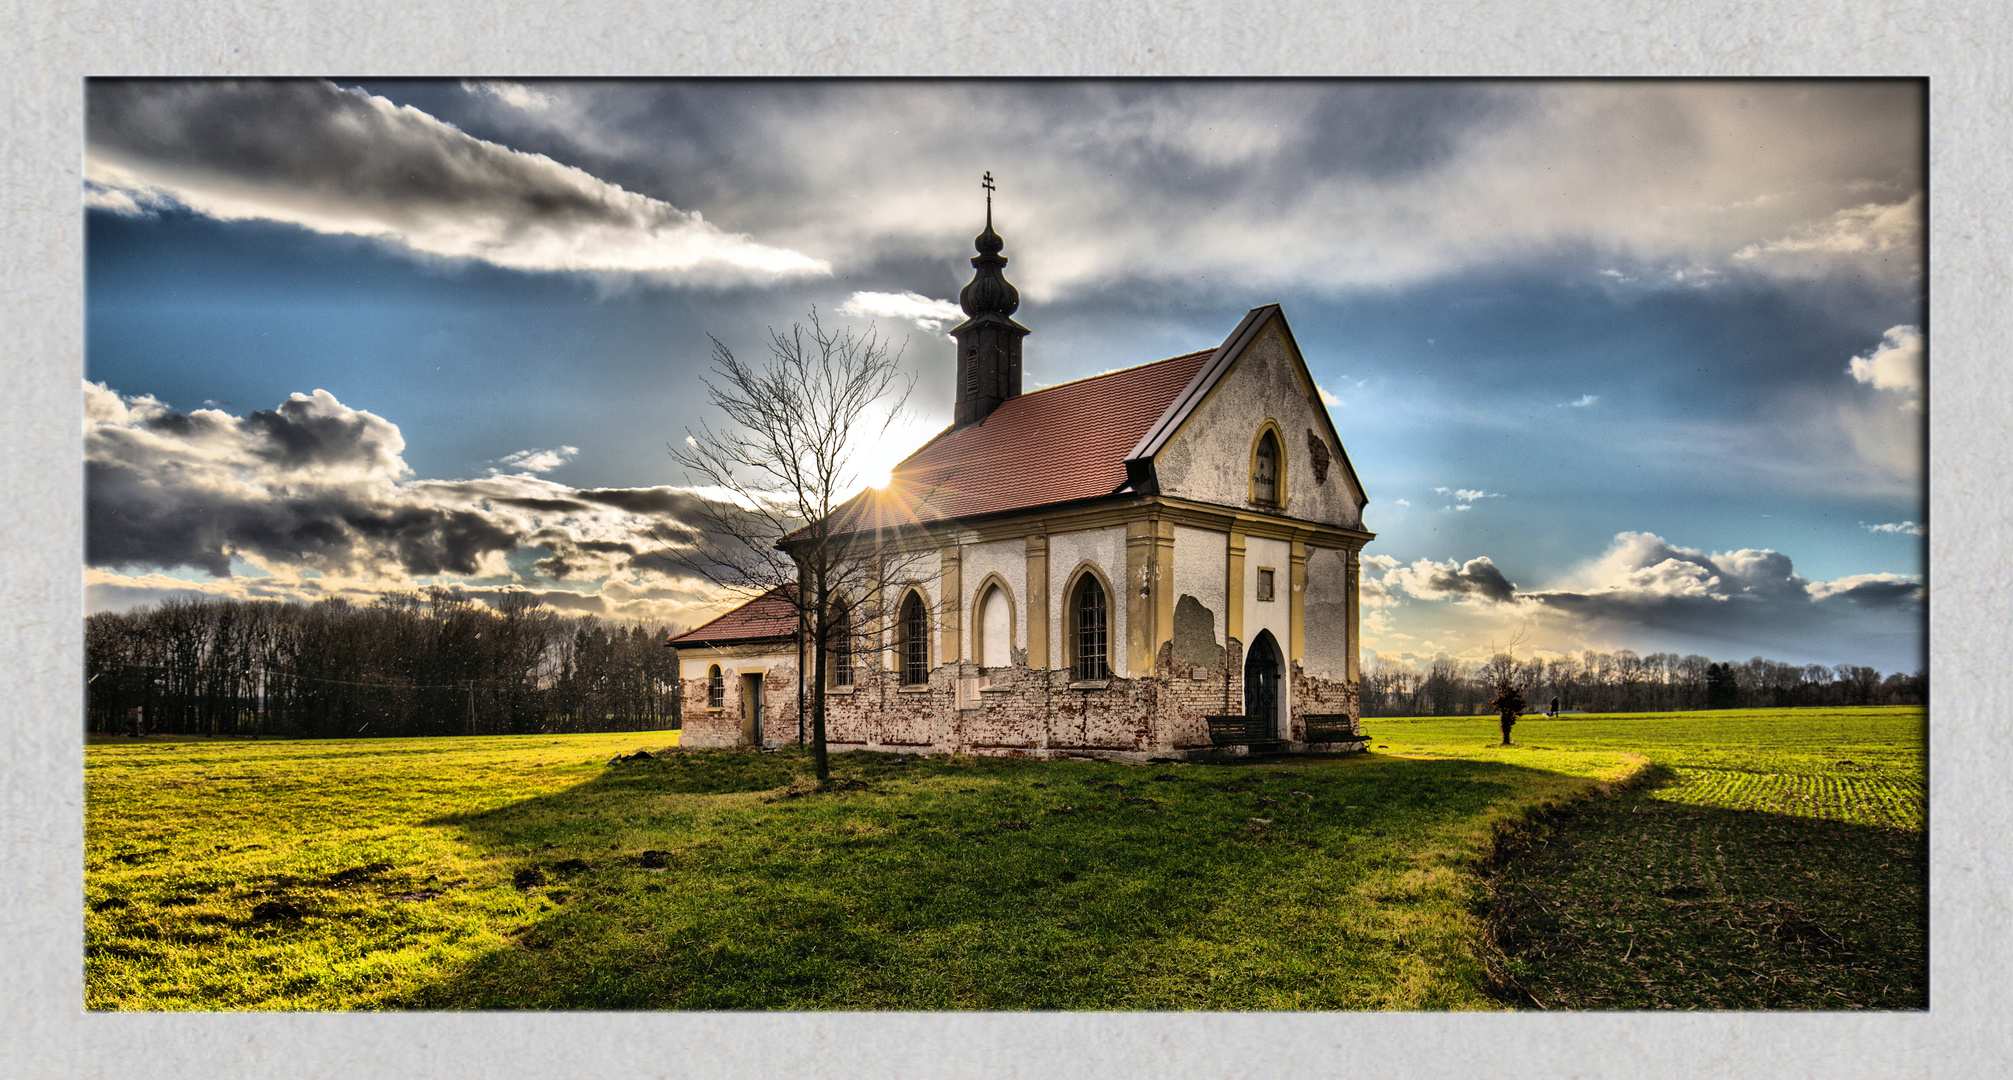 Doblkapelle zum gekreuzigten Heiland